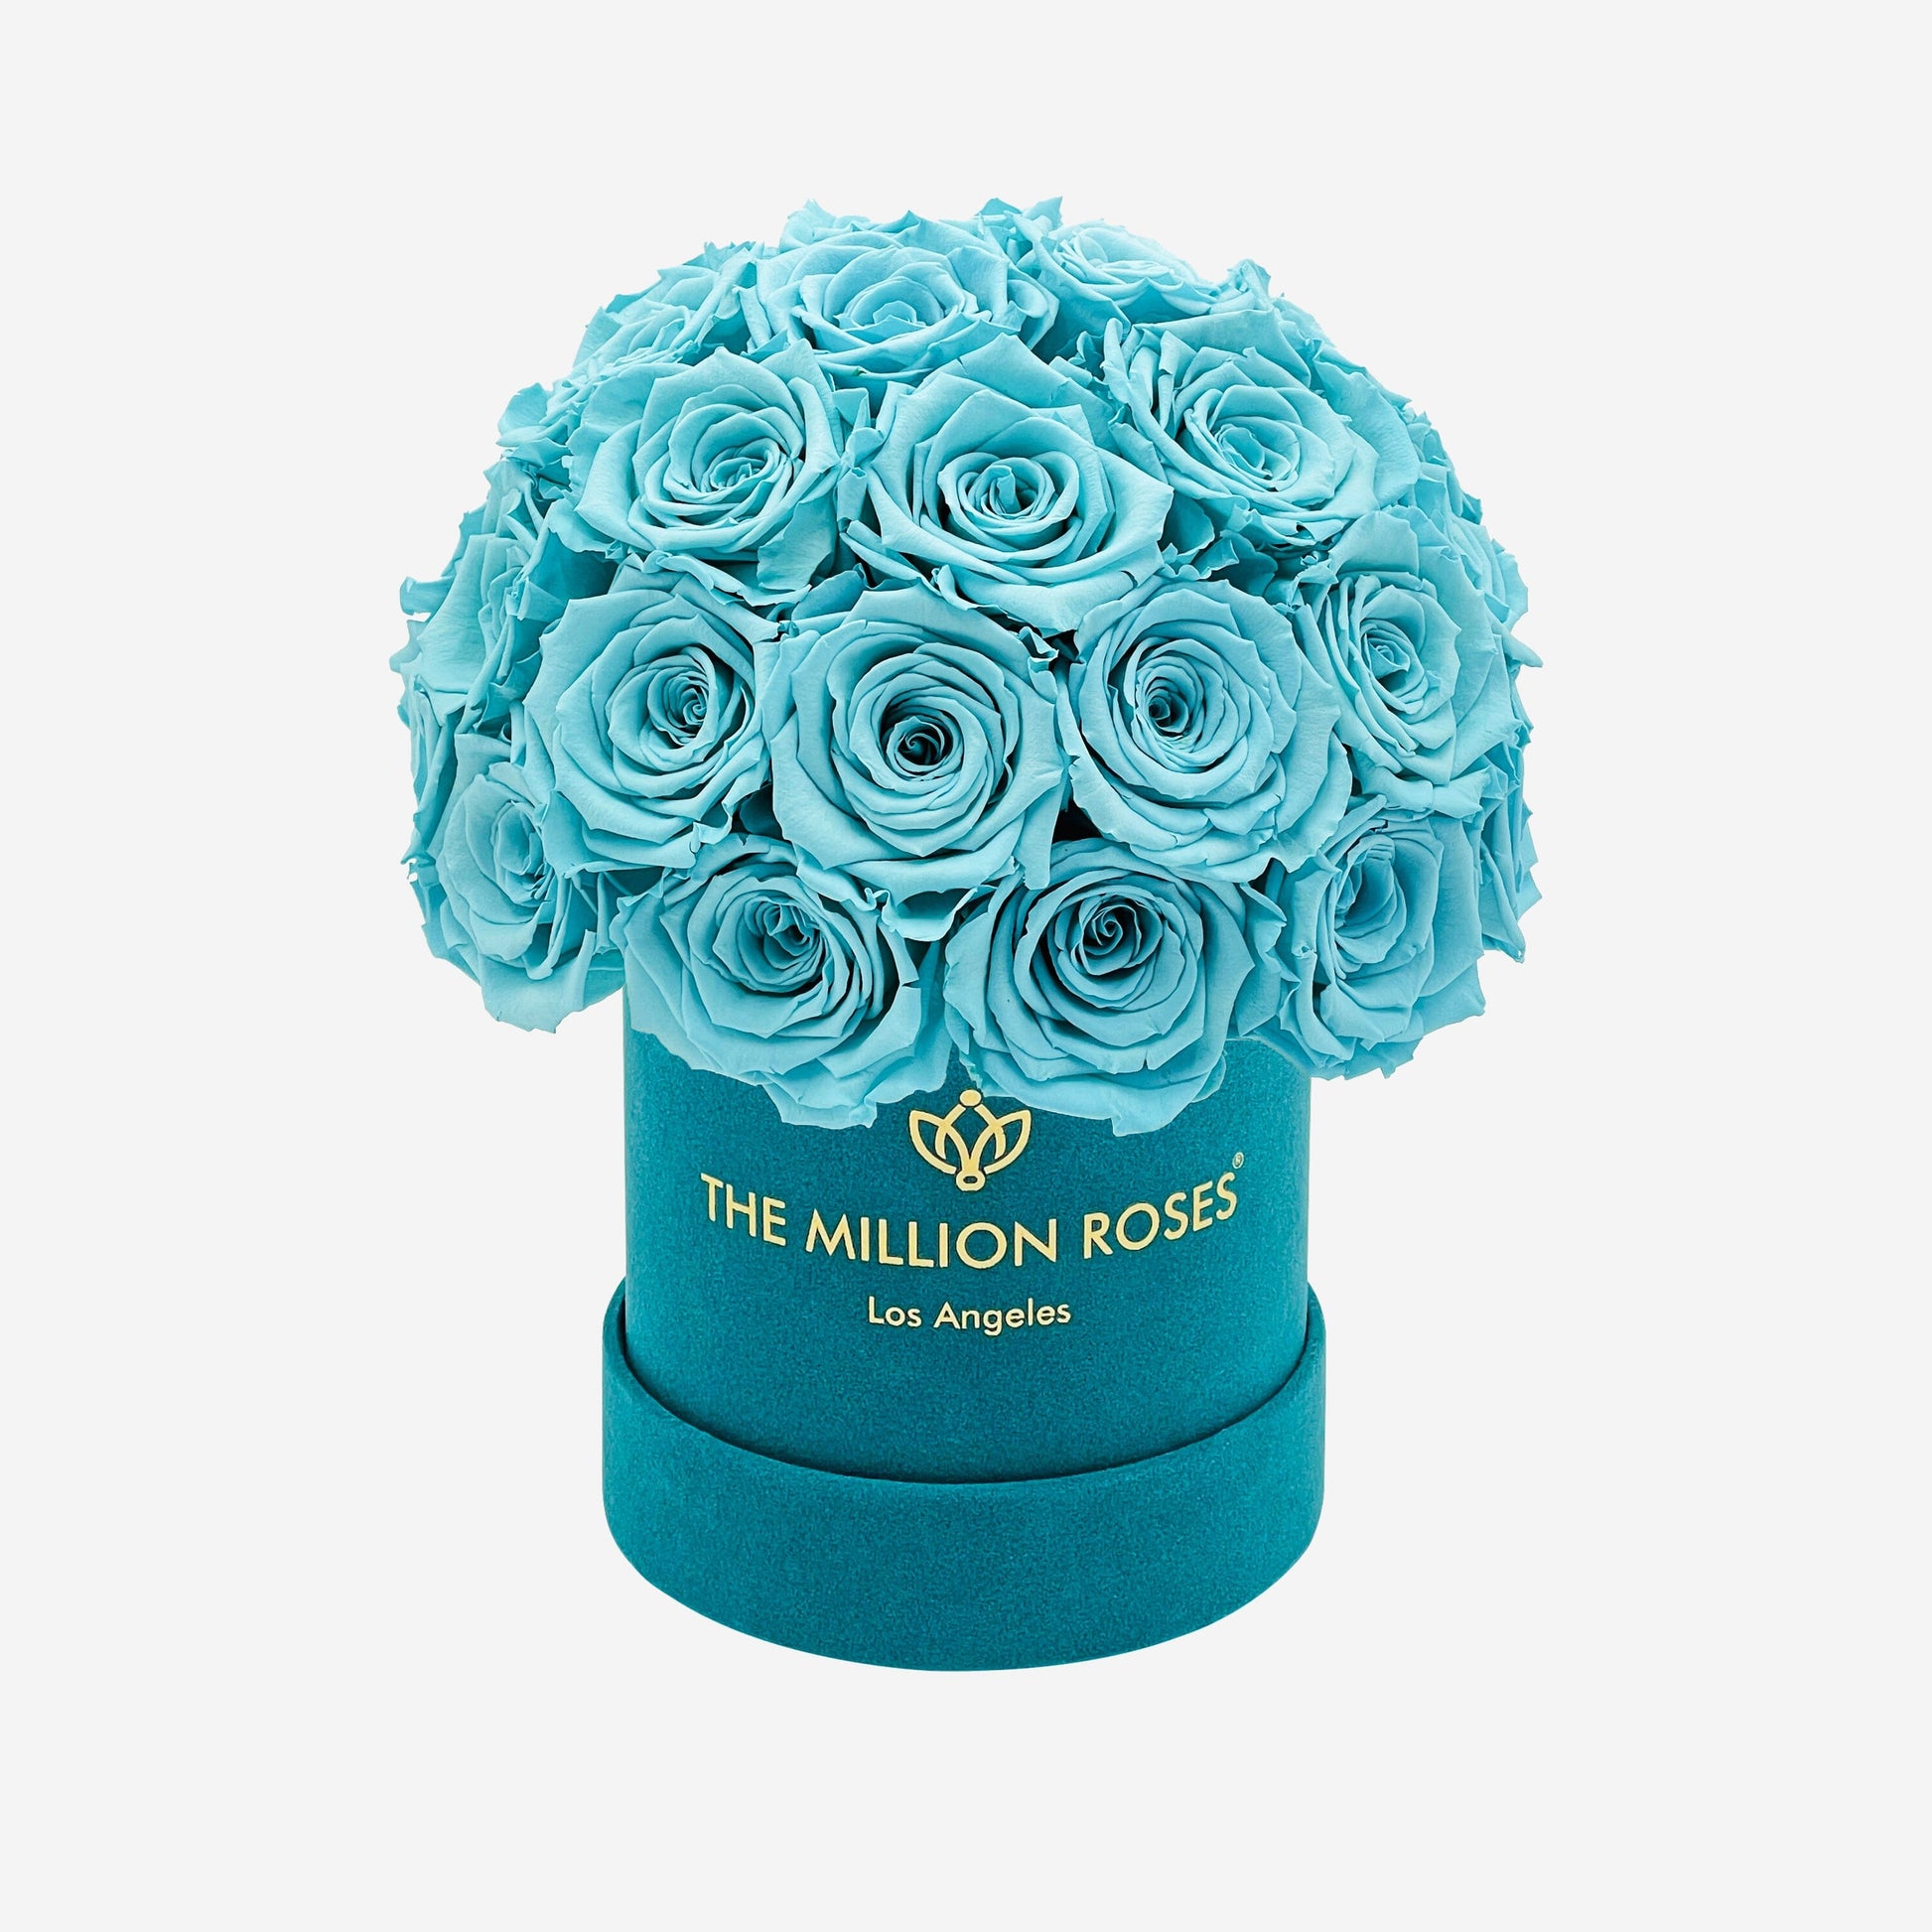 Rose Stabilizzate Blu in Cofanetto Luxury 6